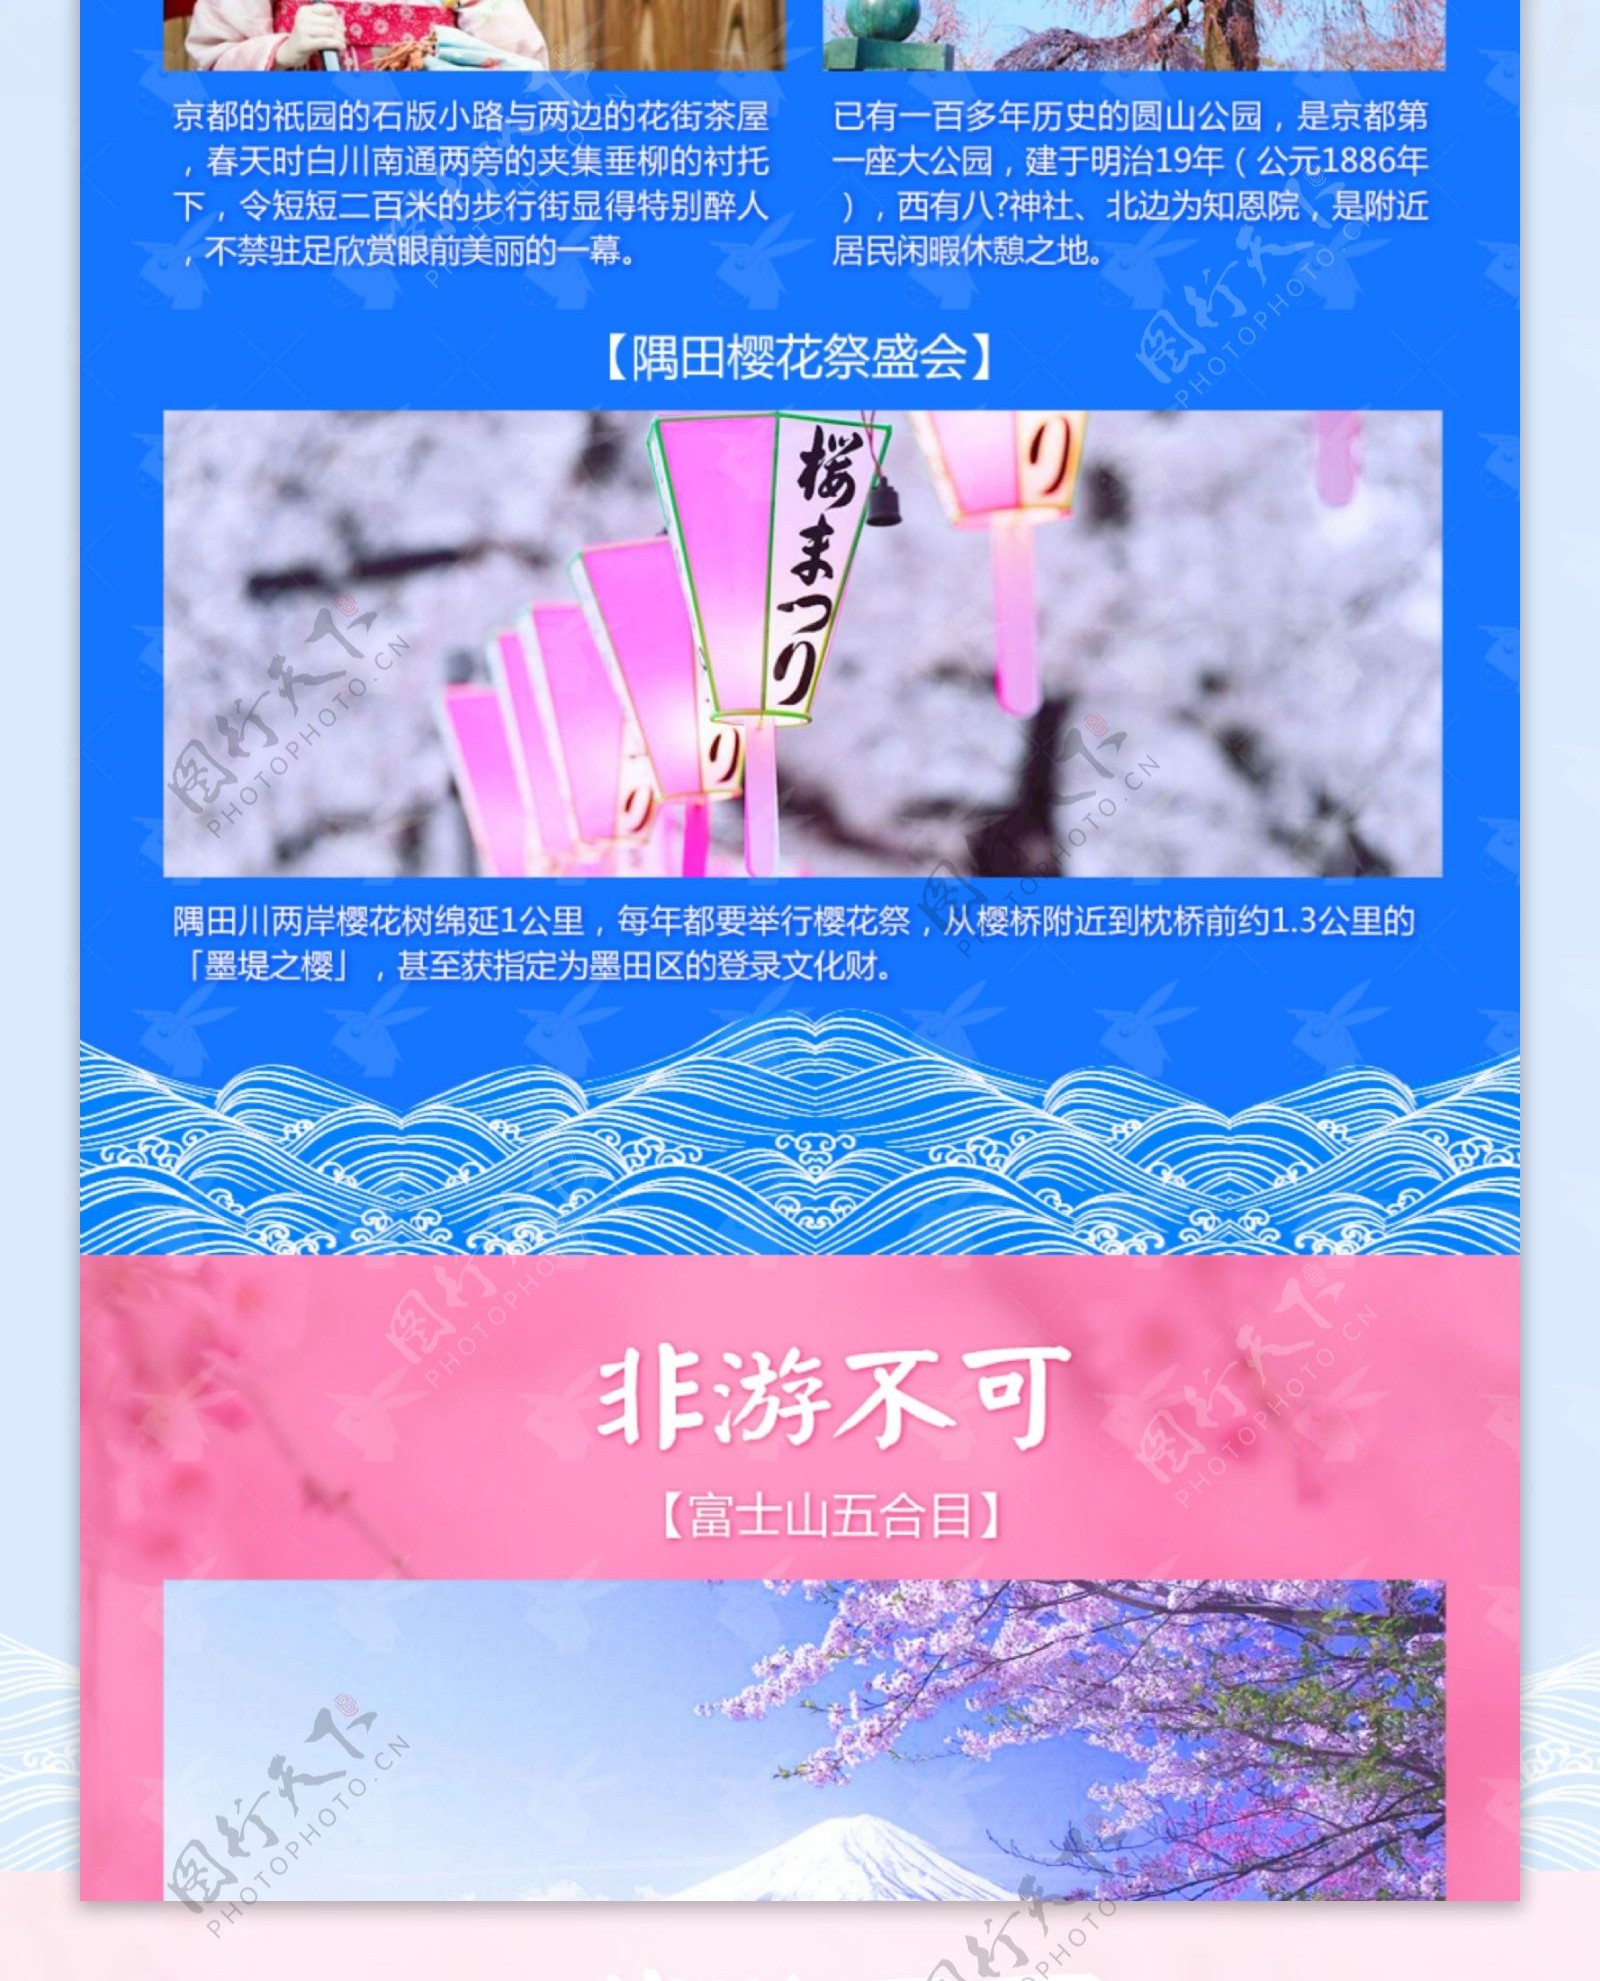 日本樱花巡礼旅游促销海报